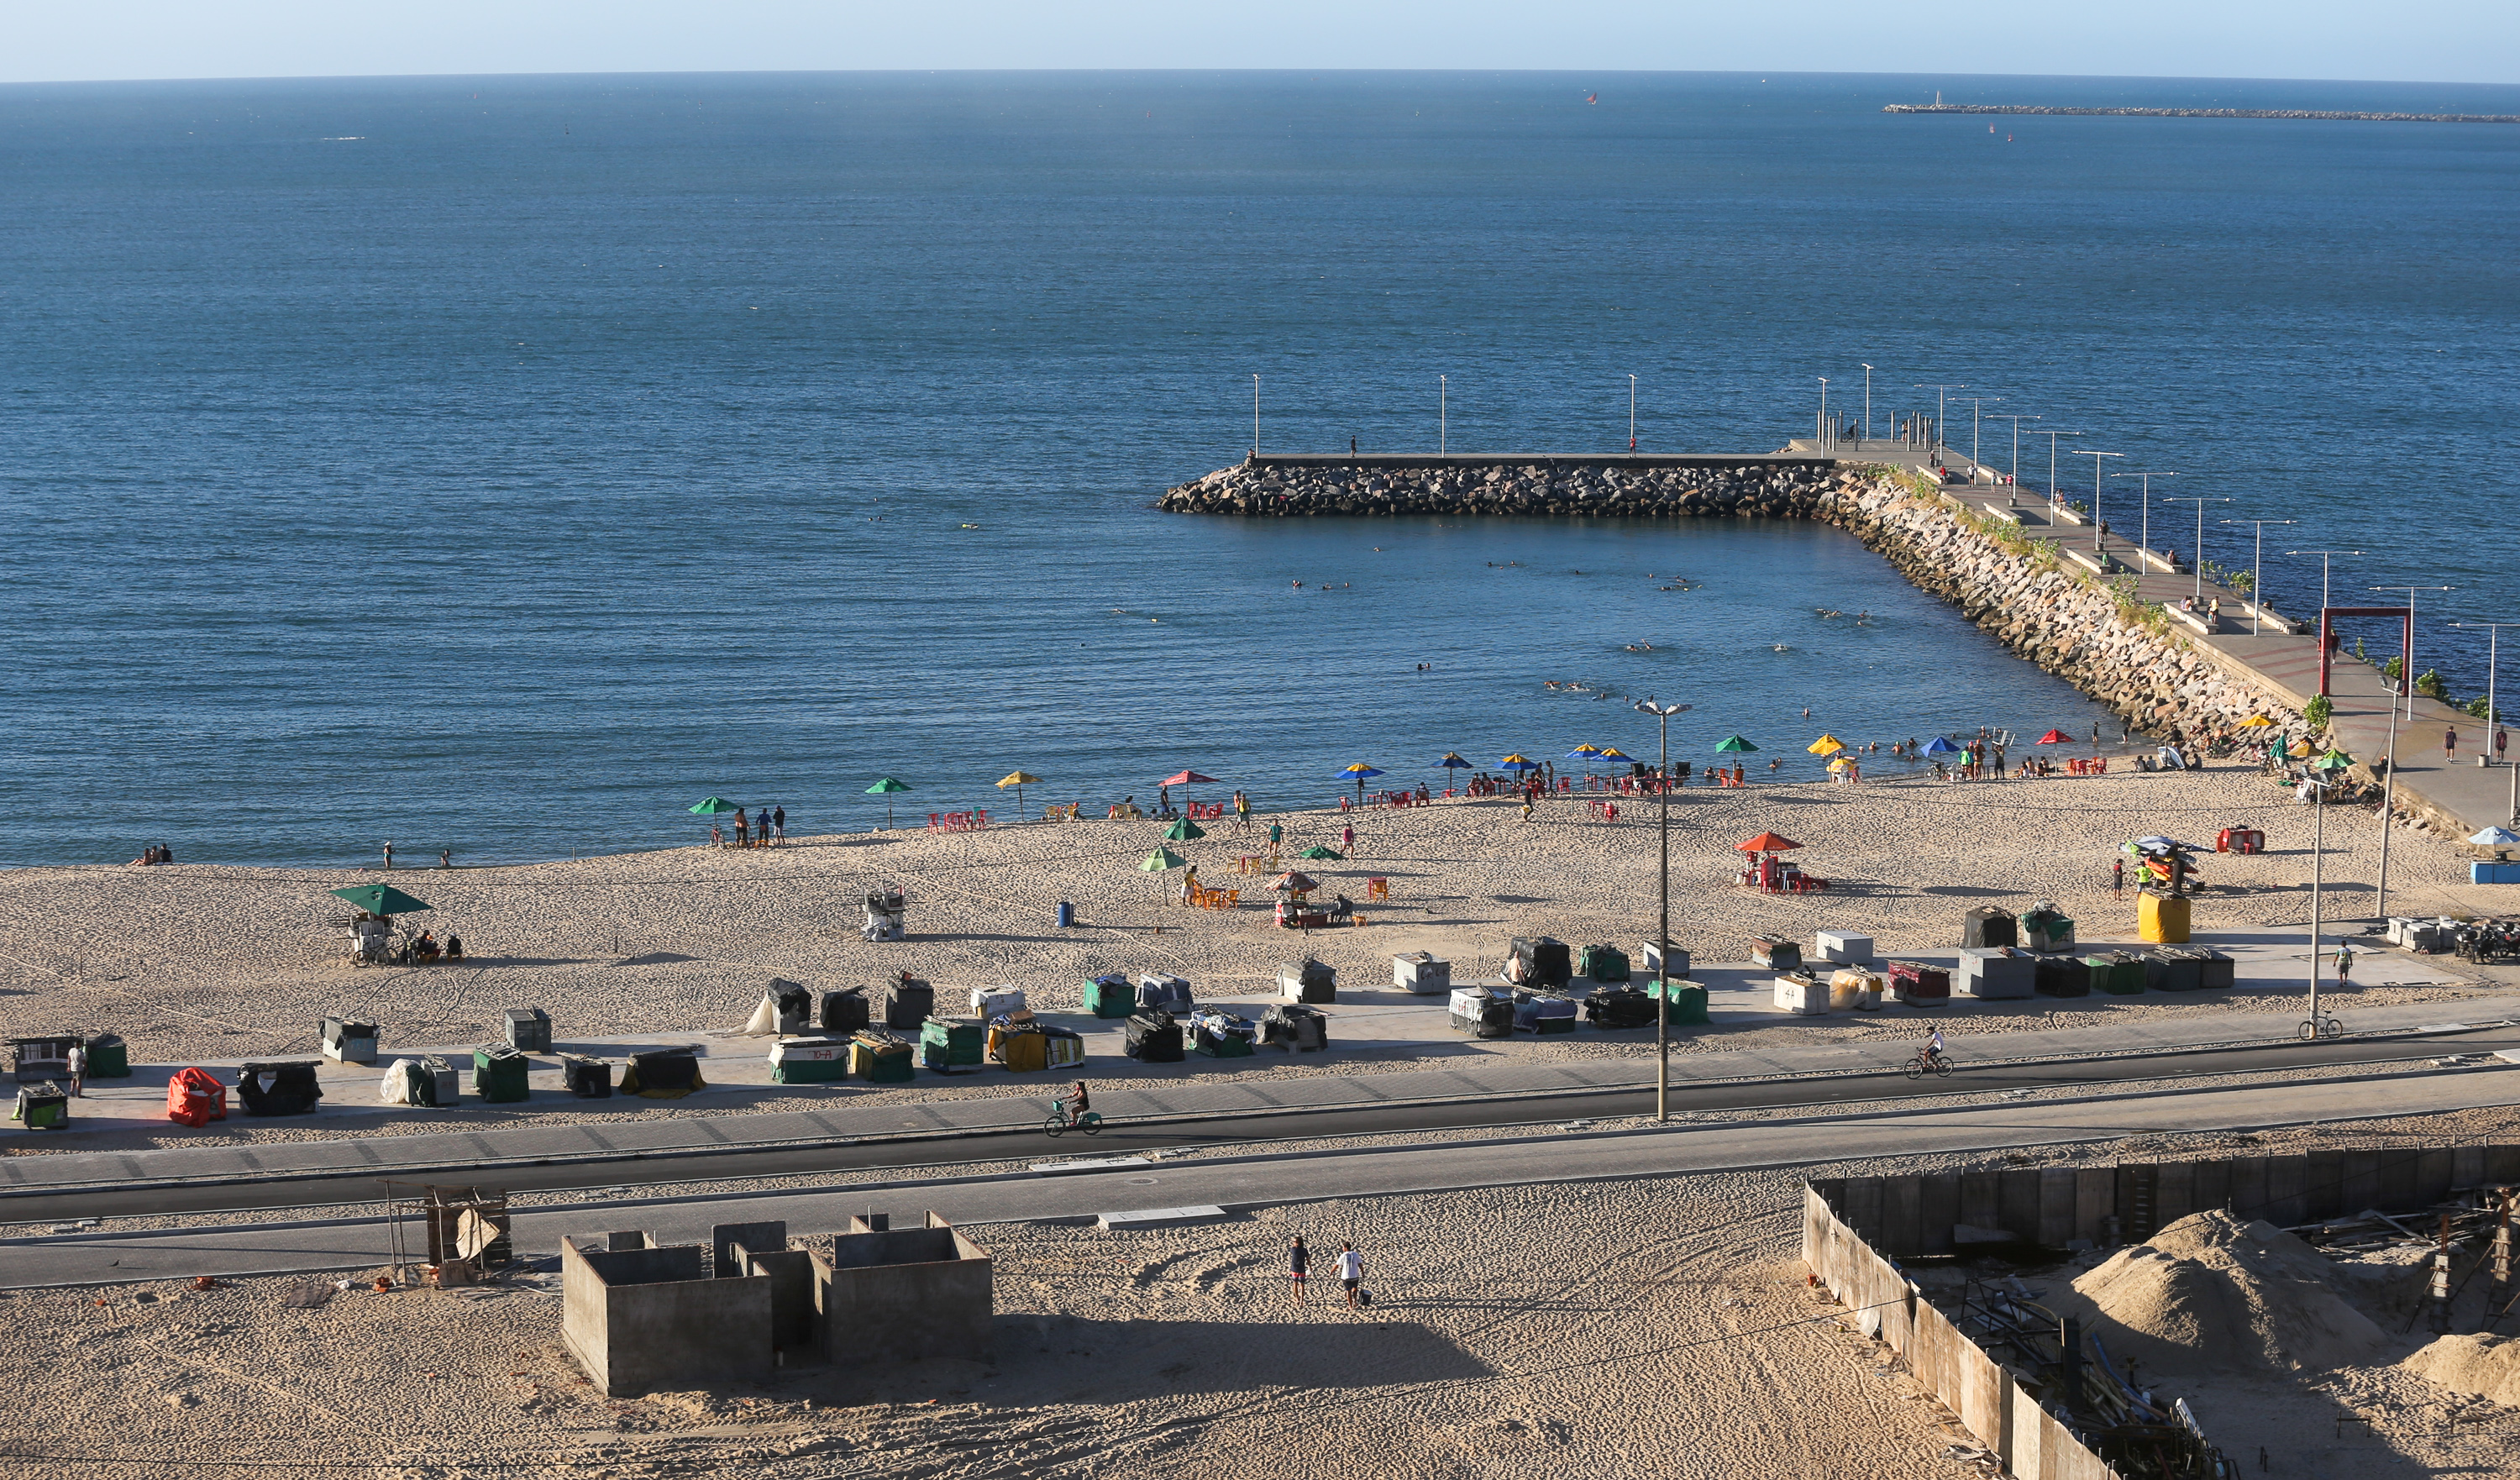 vista aérea da avenida beira mar com calçadão, mar, areia e barracas da feira desmontadas